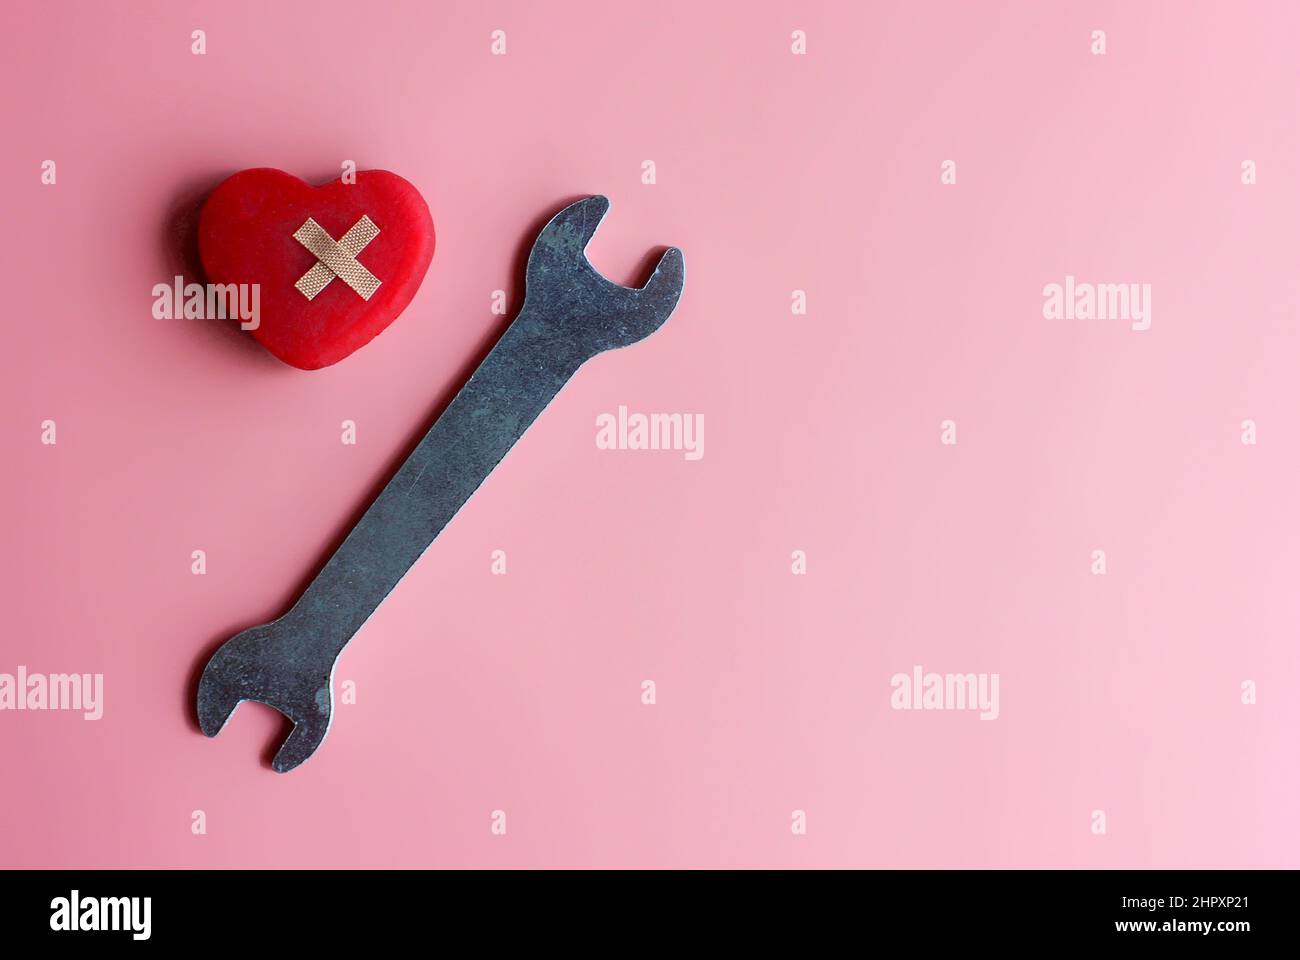 Reparieren, reparieren ein gebrochenes Herzkonzept. Rotes Herz, Verband und Schraubenschlüssel auf rosa Hintergrund mit Kopierfläche. Stockfoto